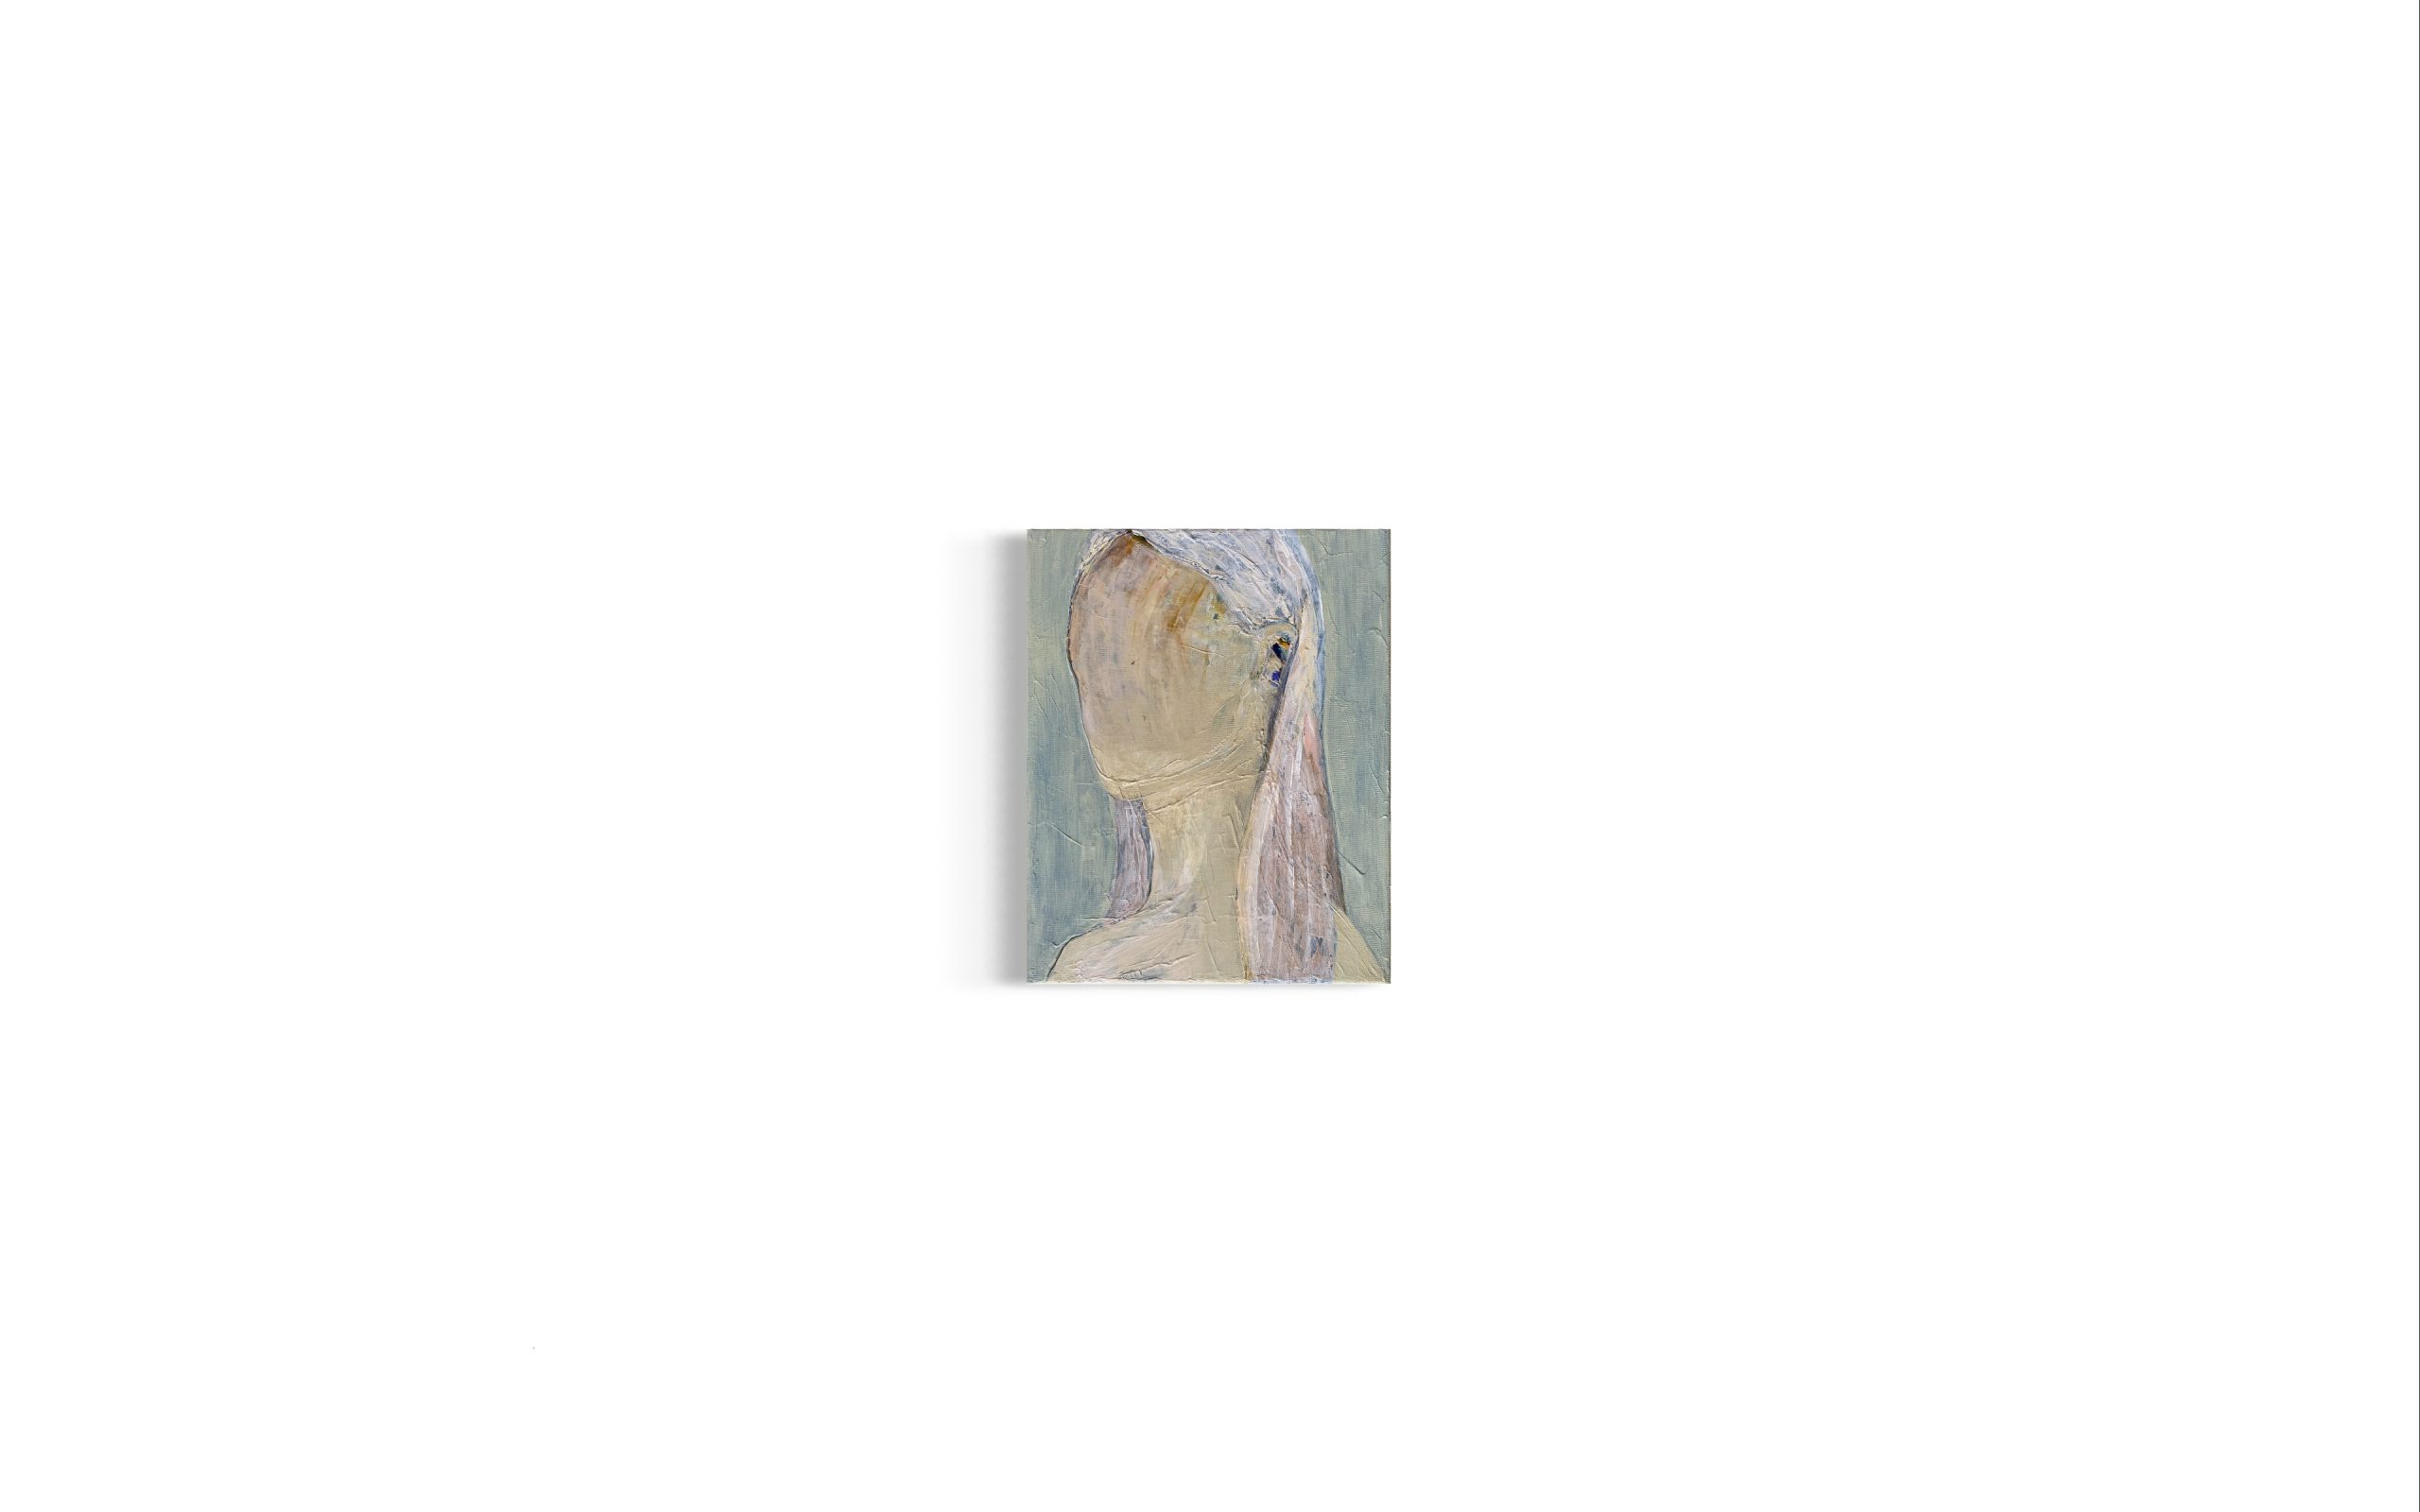 abstrakt-portraetmaleri-lyshaaret-kvinde-med-langt-haar